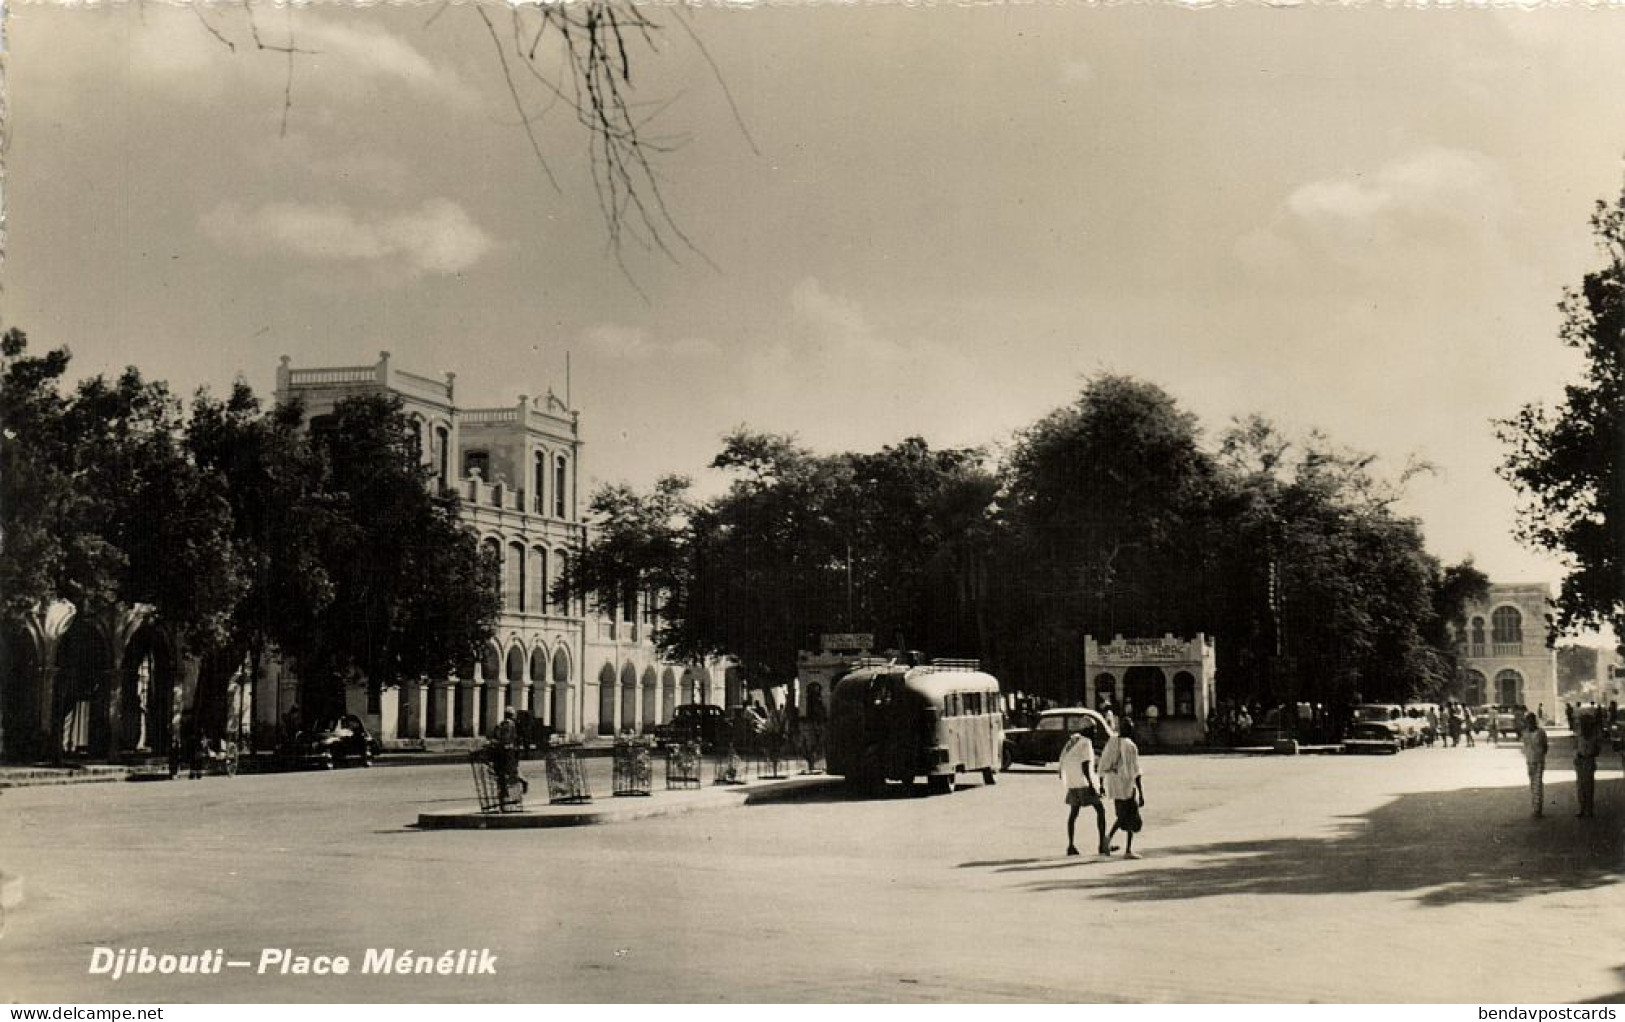 Djibouti, DJIBOUTI, Place Ménélick, Bus (1950s) RPPC Postcard - Djibouti